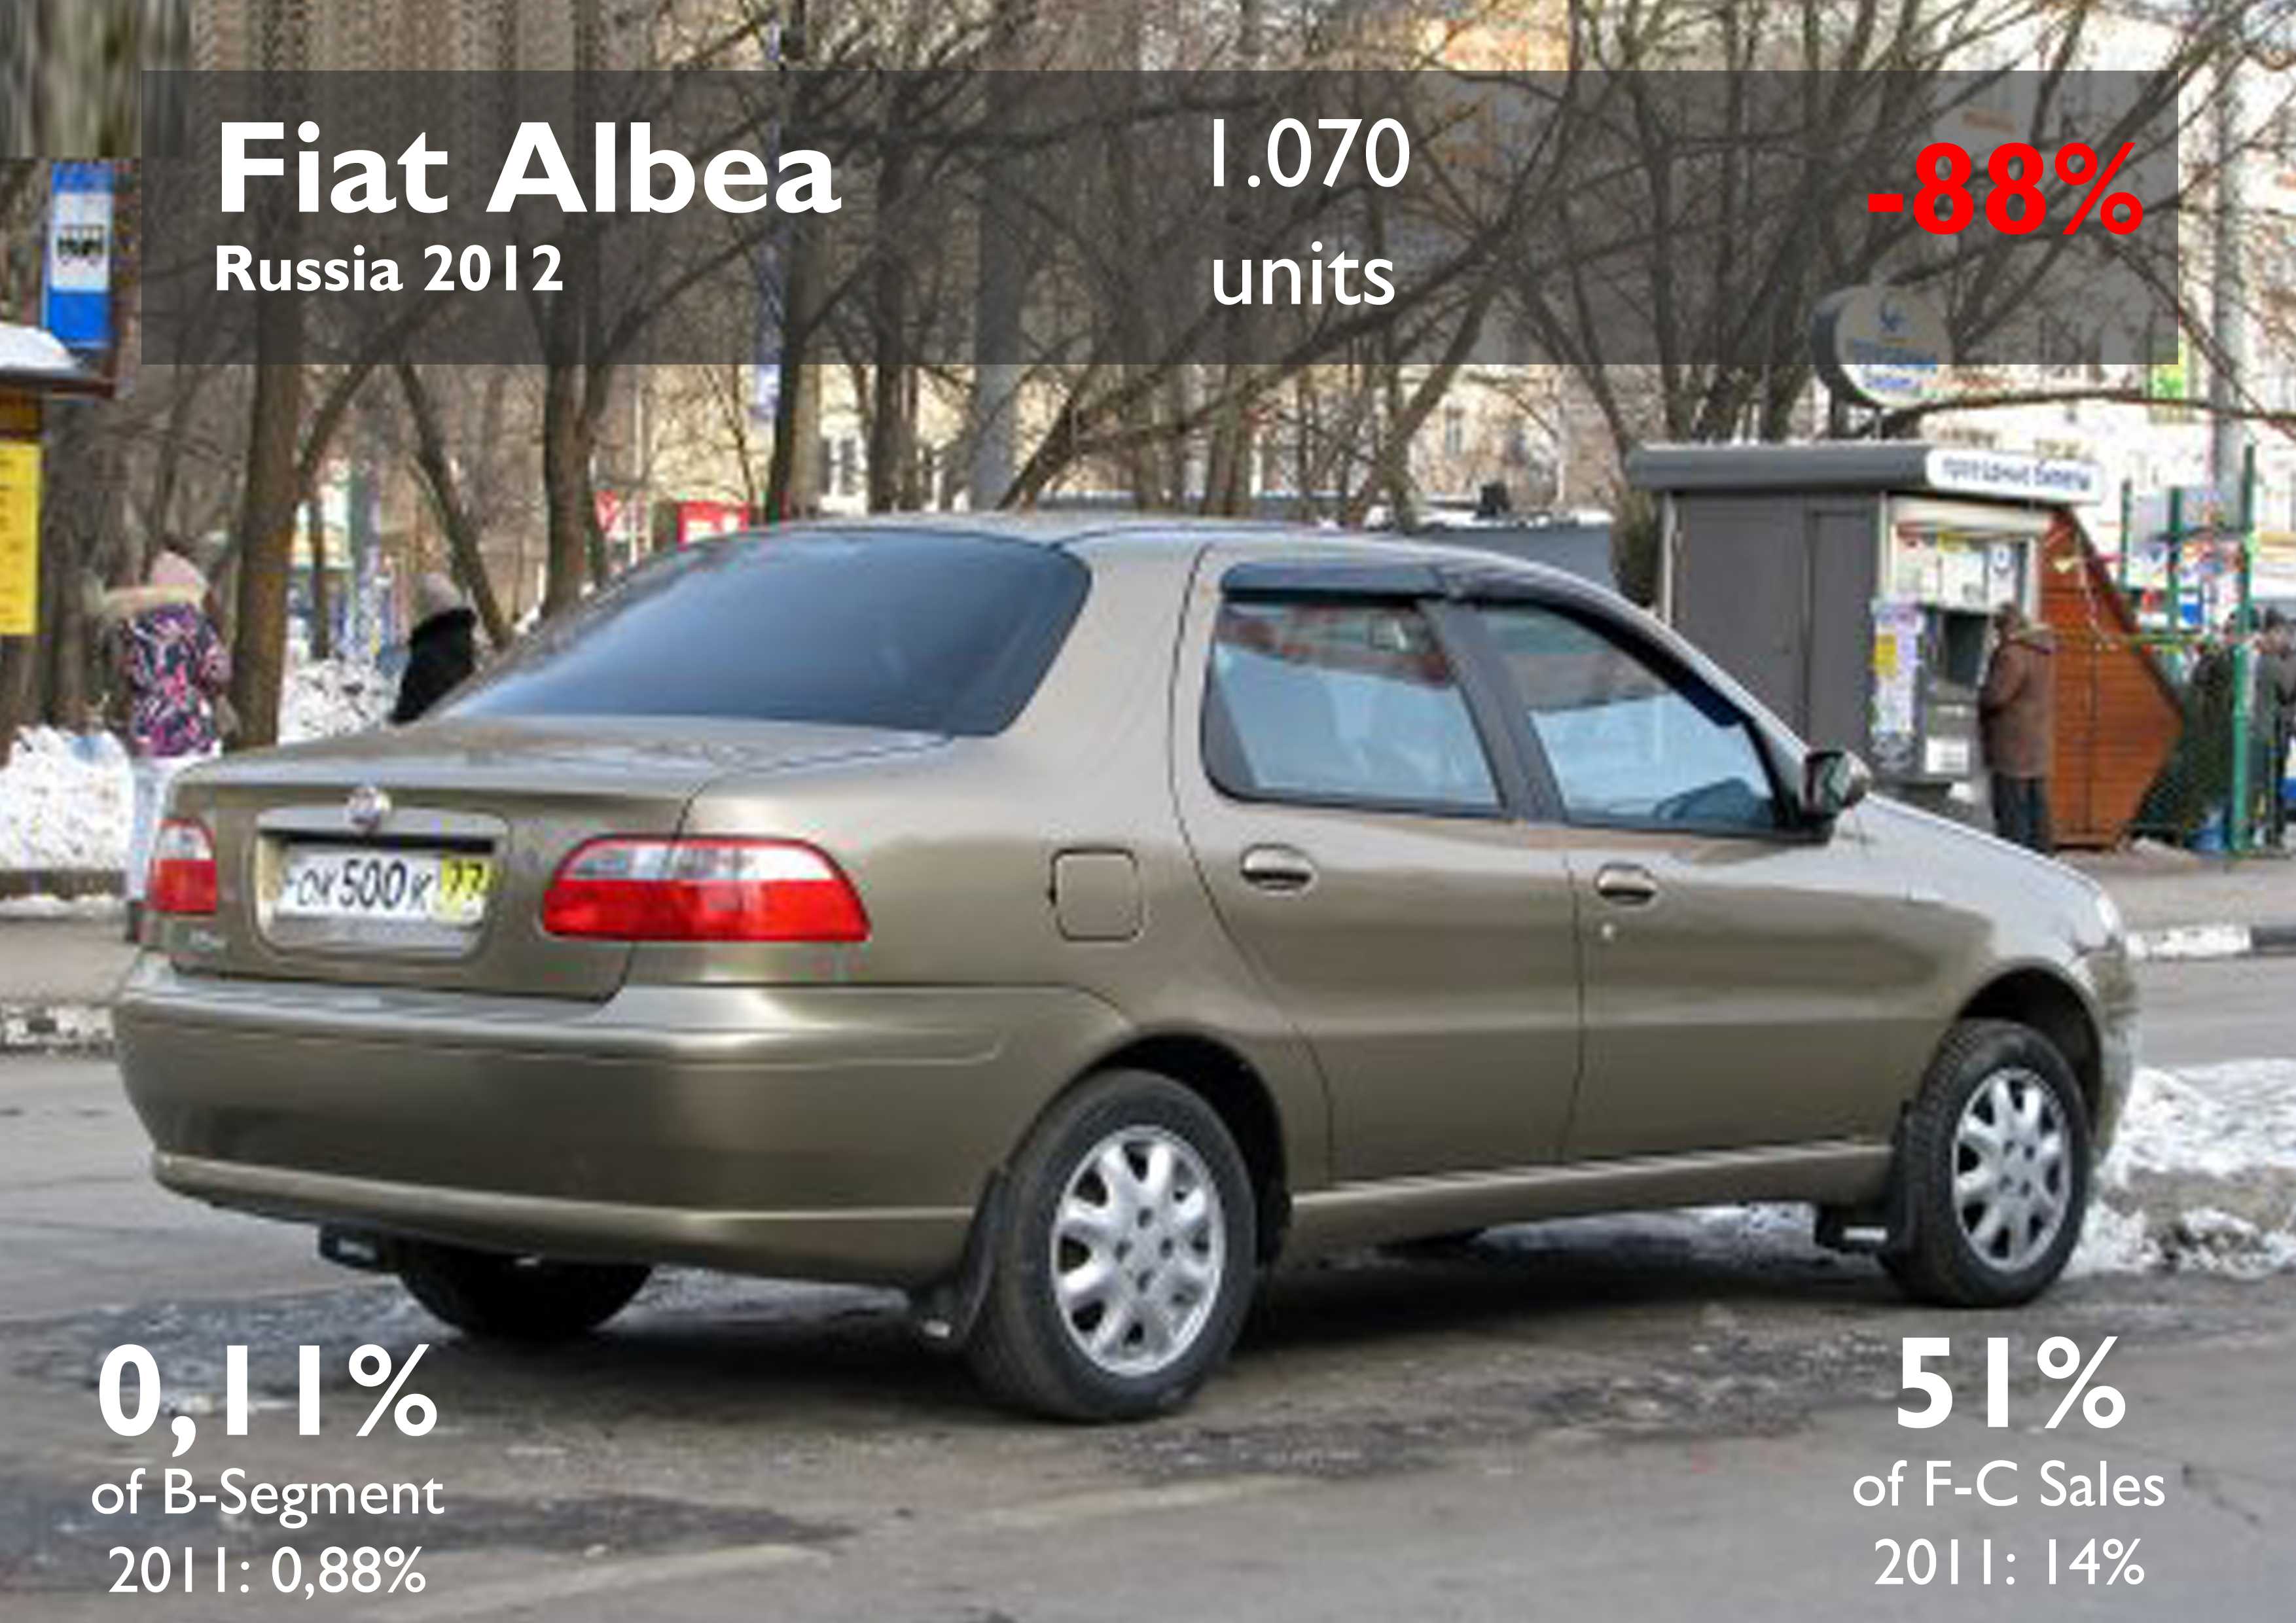 Fiat albea 2007, 1.4 литра, всем здравствуйте, челябинск, мкпп, передний привод, седан, бензиновый двигатель